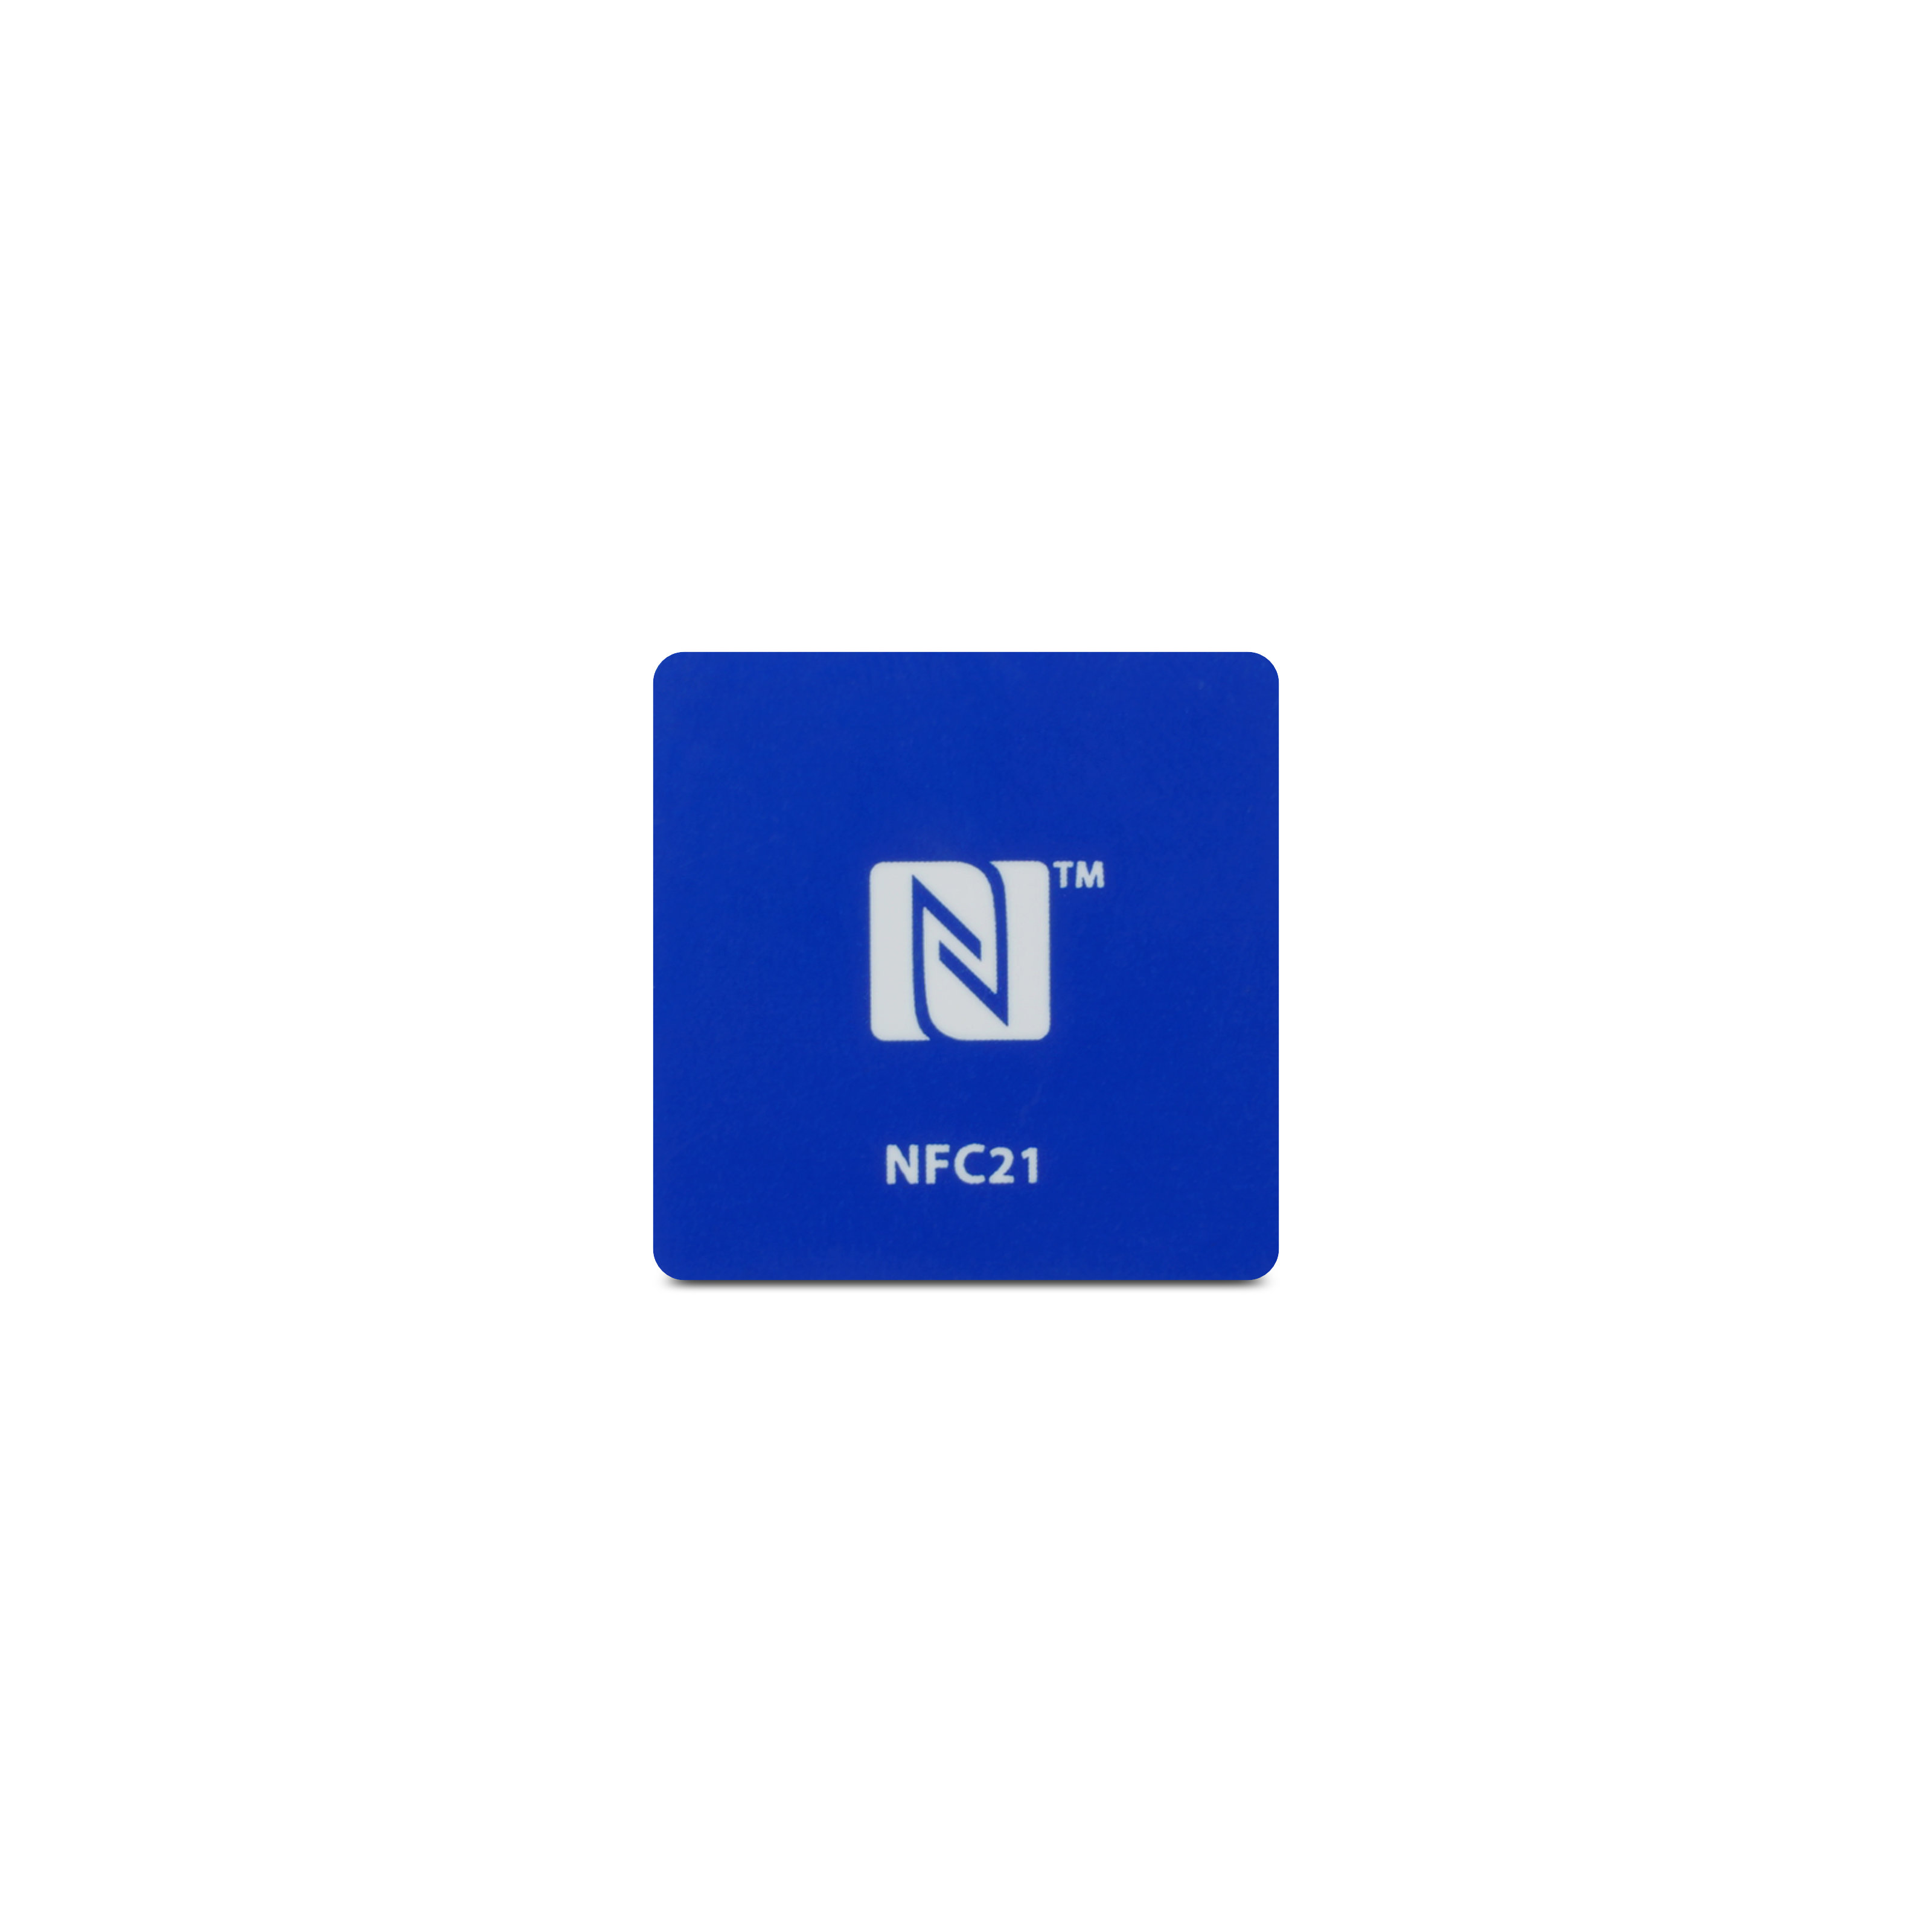 Vorderseite des NFC Magneten aus blauem PET